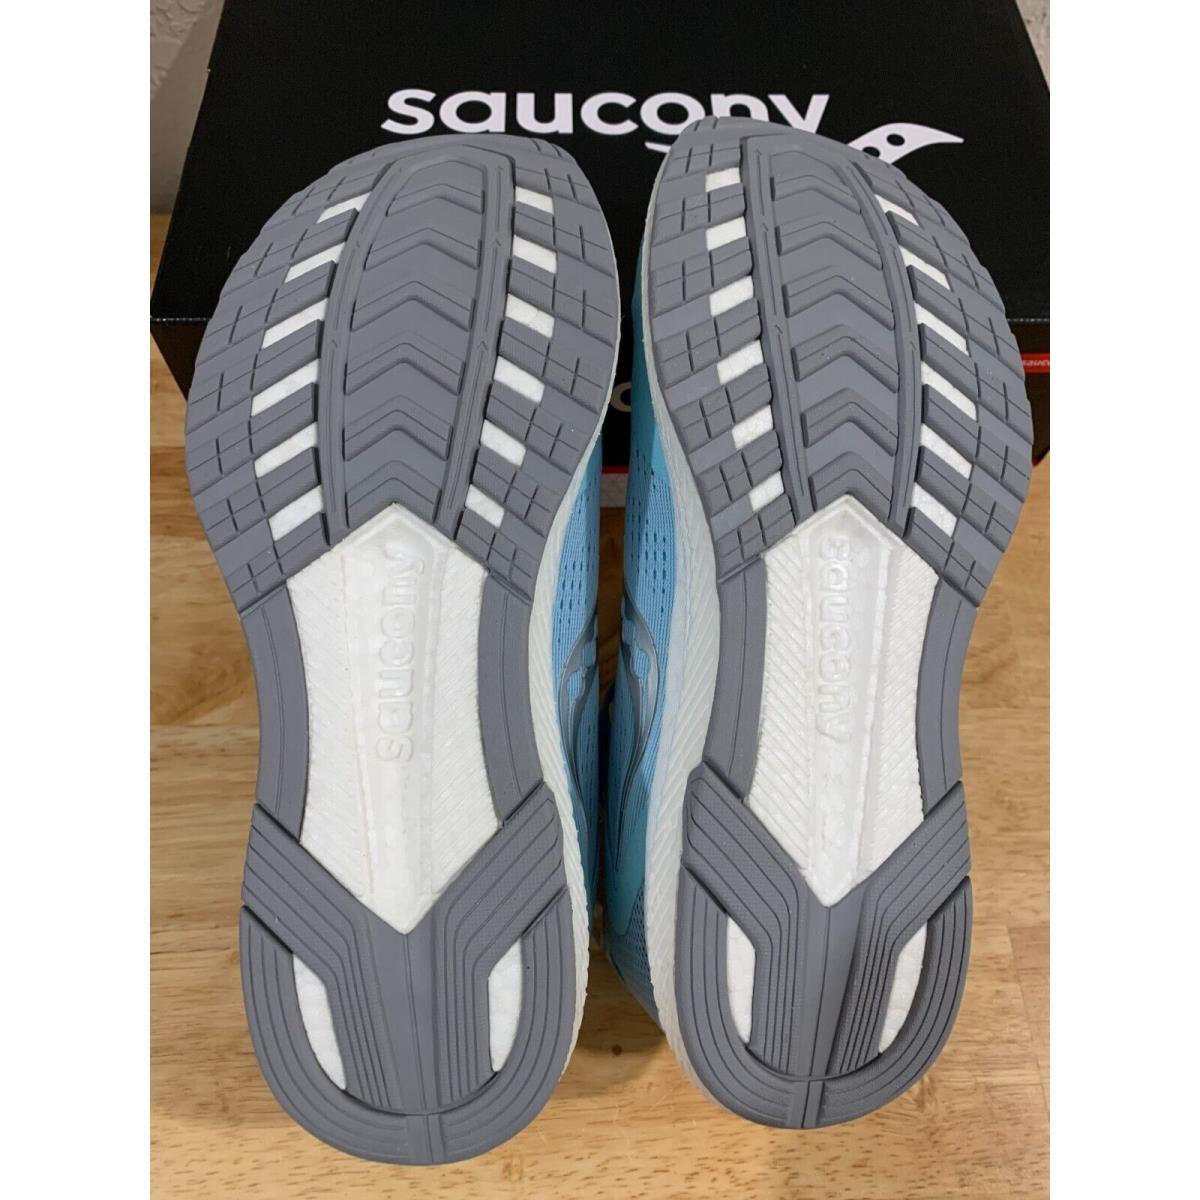 Saucony shoes  - Blue 3